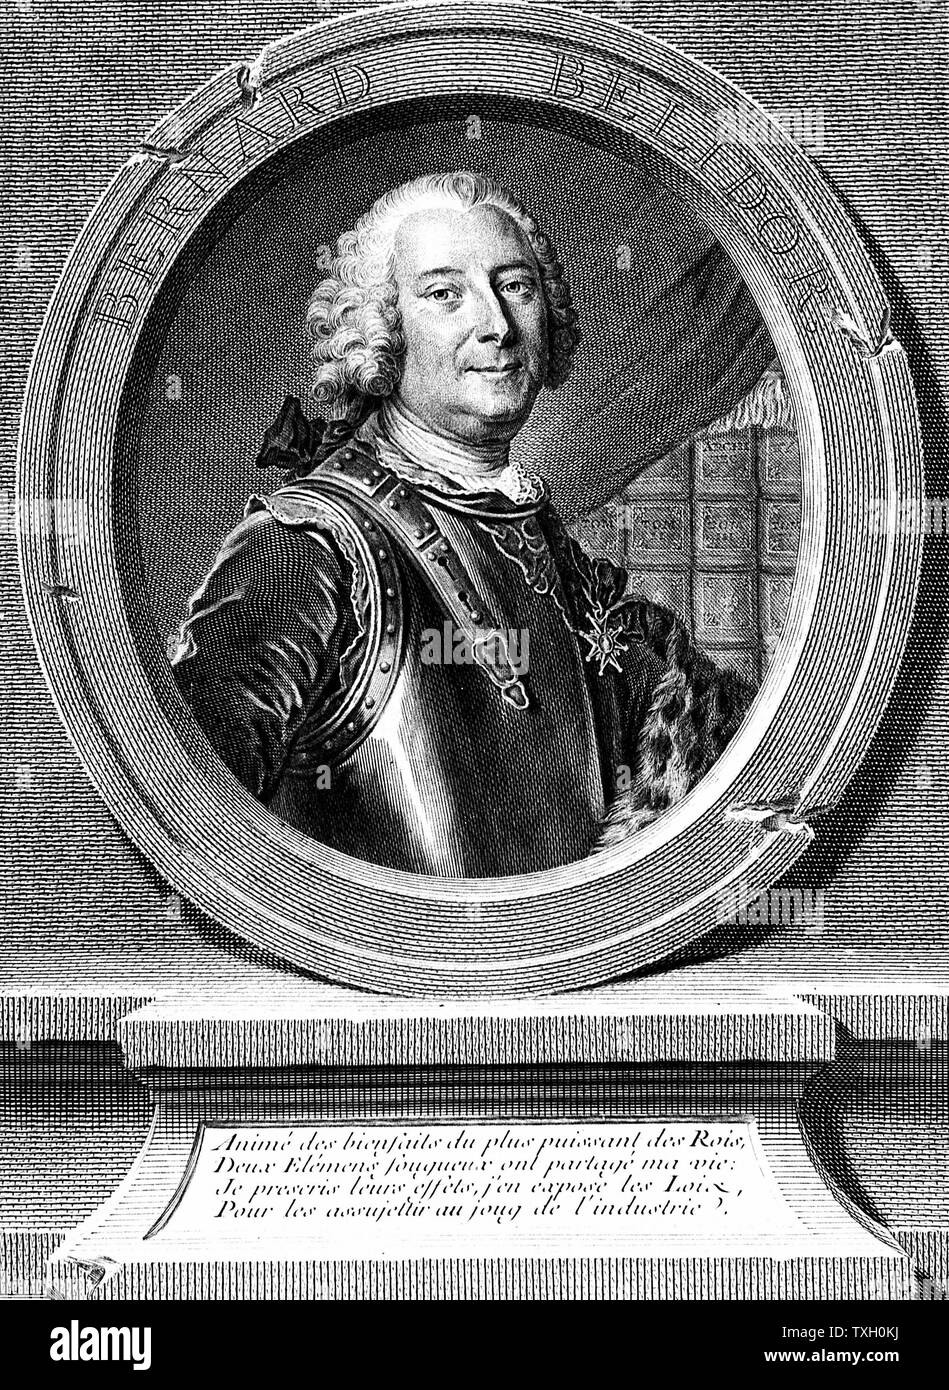 Belidor, Bernard Forest (1693-C1761) des militaires français et ingénieur civil. Gravure Portrait frontispice de son architecture "hydraulique", Paris, 1737 Banque D'Images